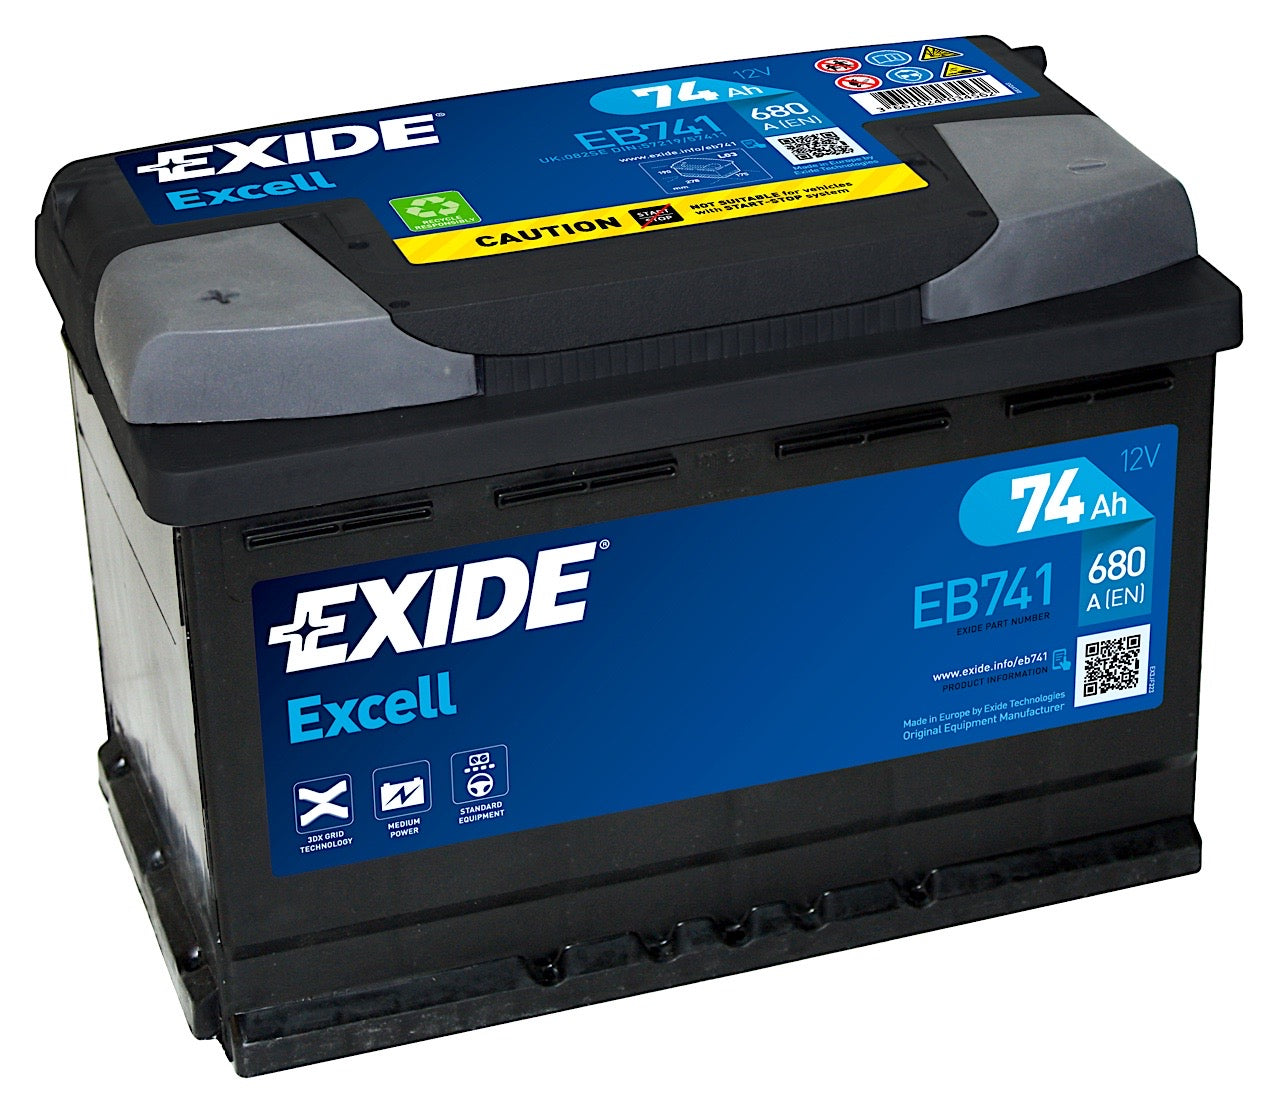 Exide Excell EB741 12V 74Ah 680A/EN